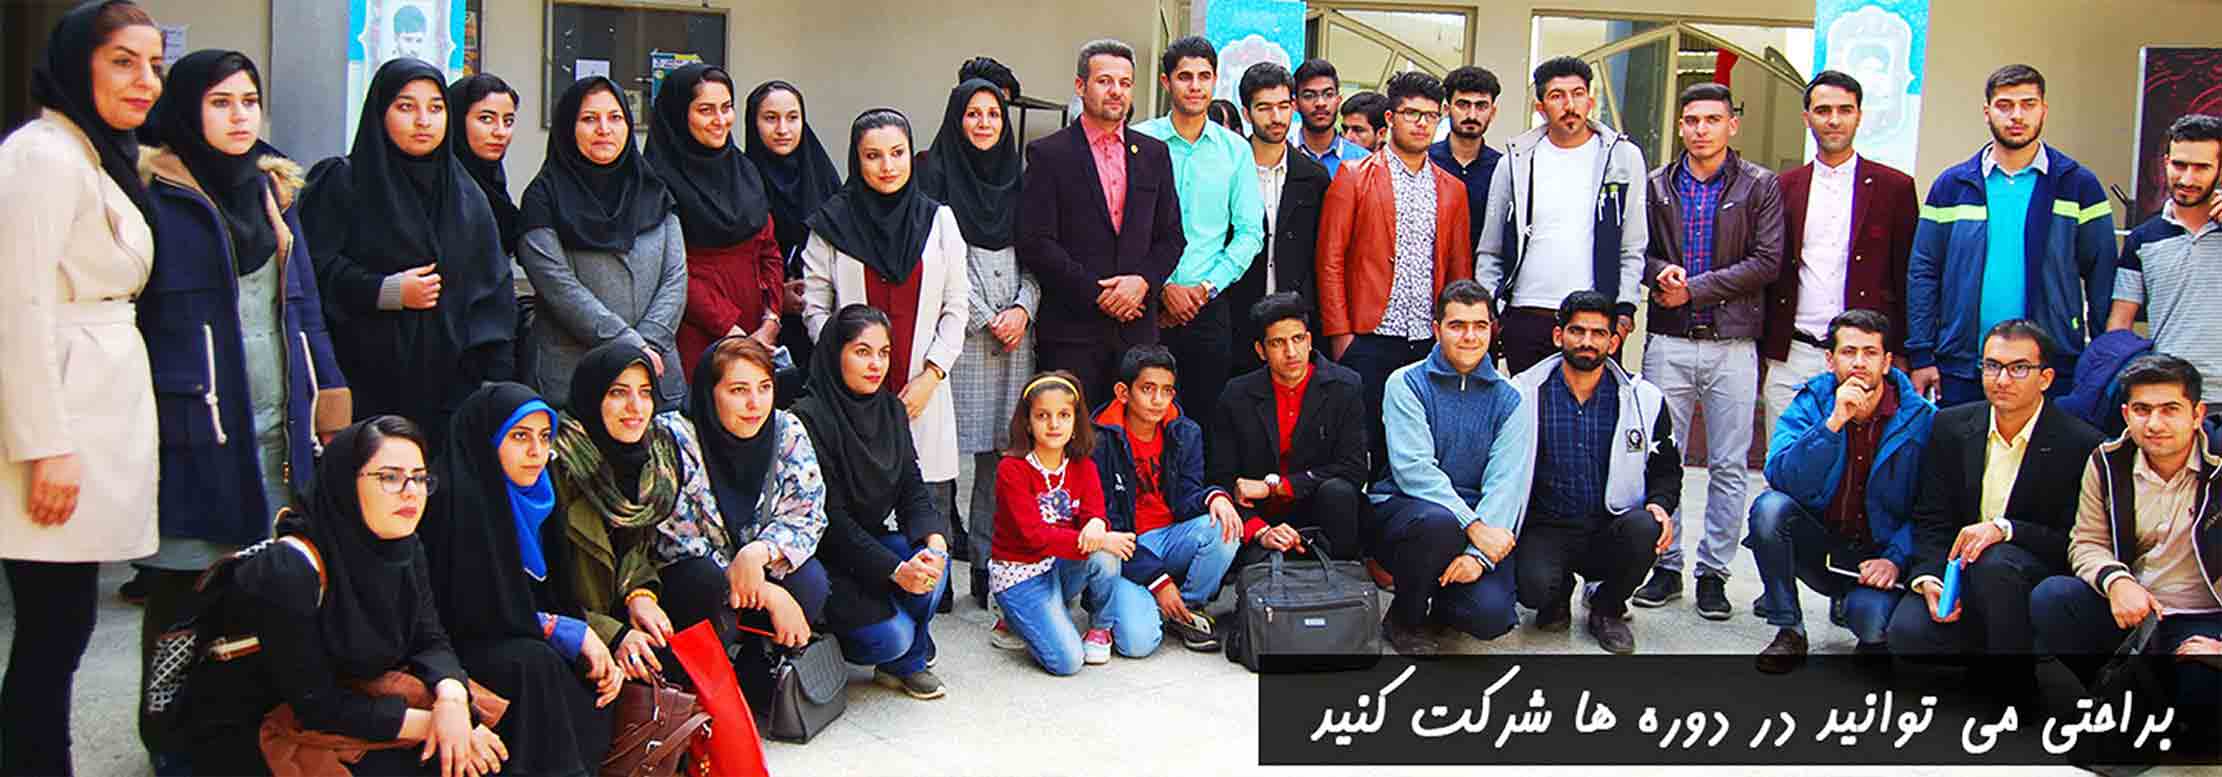 آموزش پرورش زالو بصورت تخصصی در ایران 3